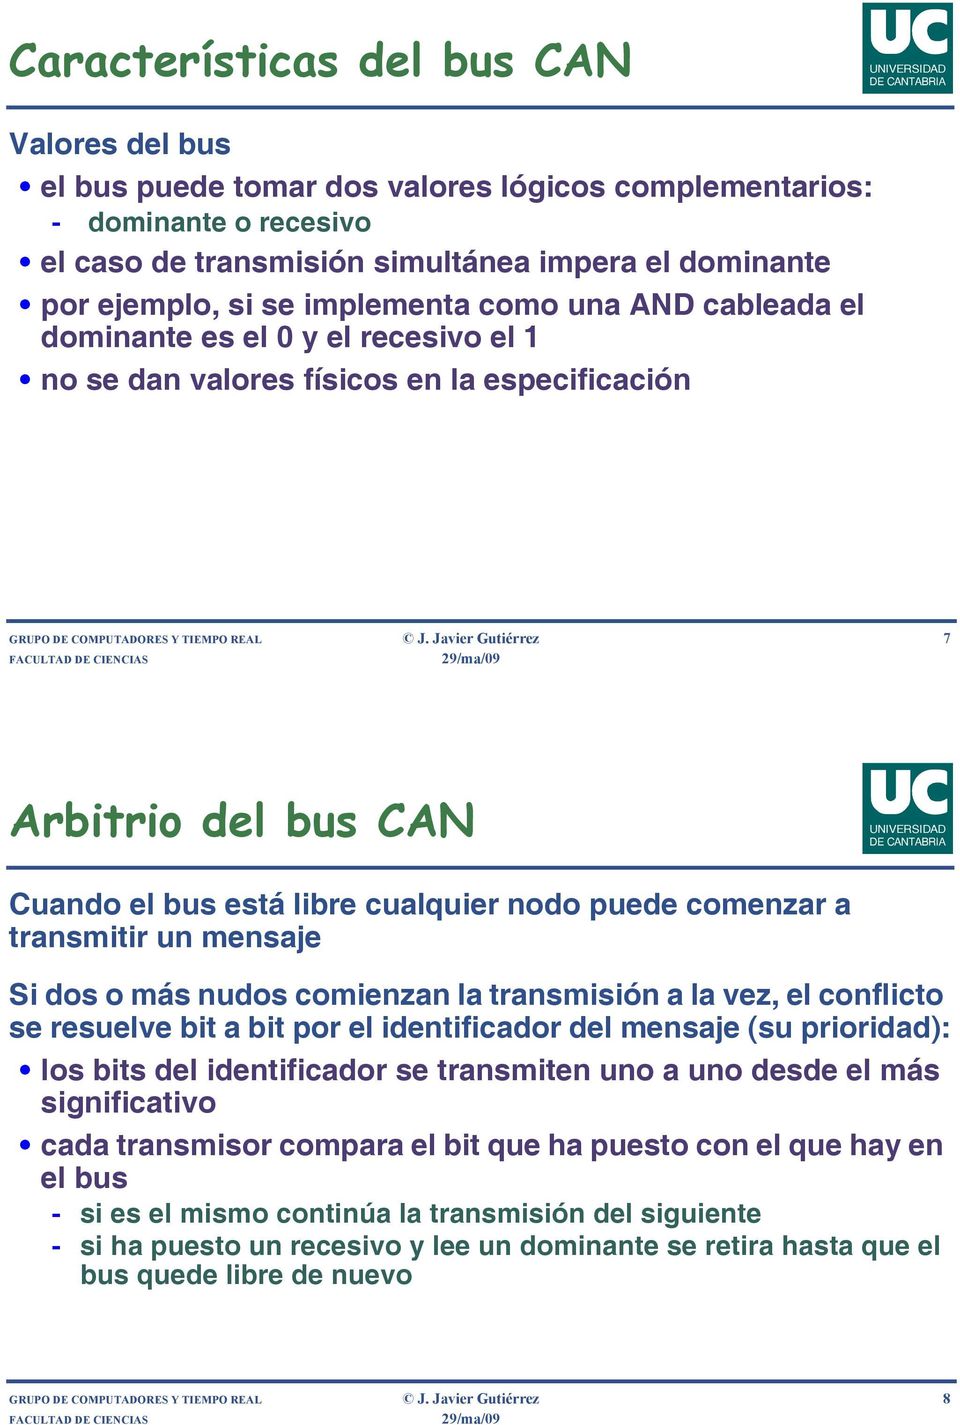 Javier Gutiérrez 7 Arbitrio del bus CAN Cuando el bus está libre cualquier nodo puede comenzar a transmitir un mensaje Si dos o más nudos comienzan la transmisión a la vez, el conflicto se resuelve